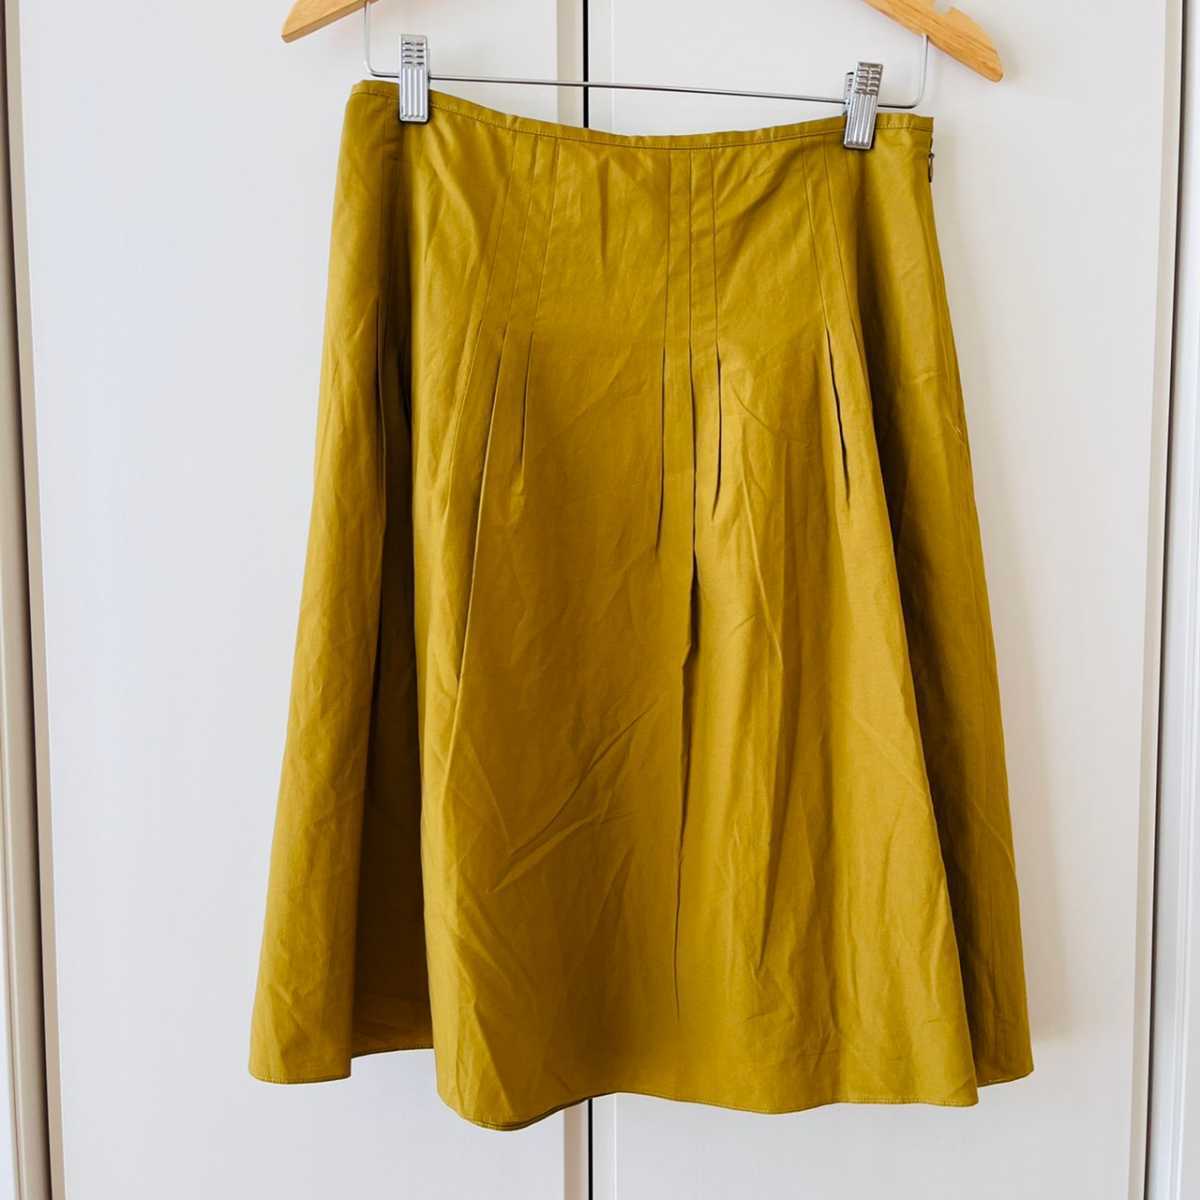 F5710cL сделано в Японии {NATURAL BEAUTY Natural Beauty } размер 13 XL ранг flair юбка горчица тонкий подкладка есть женский красивый .